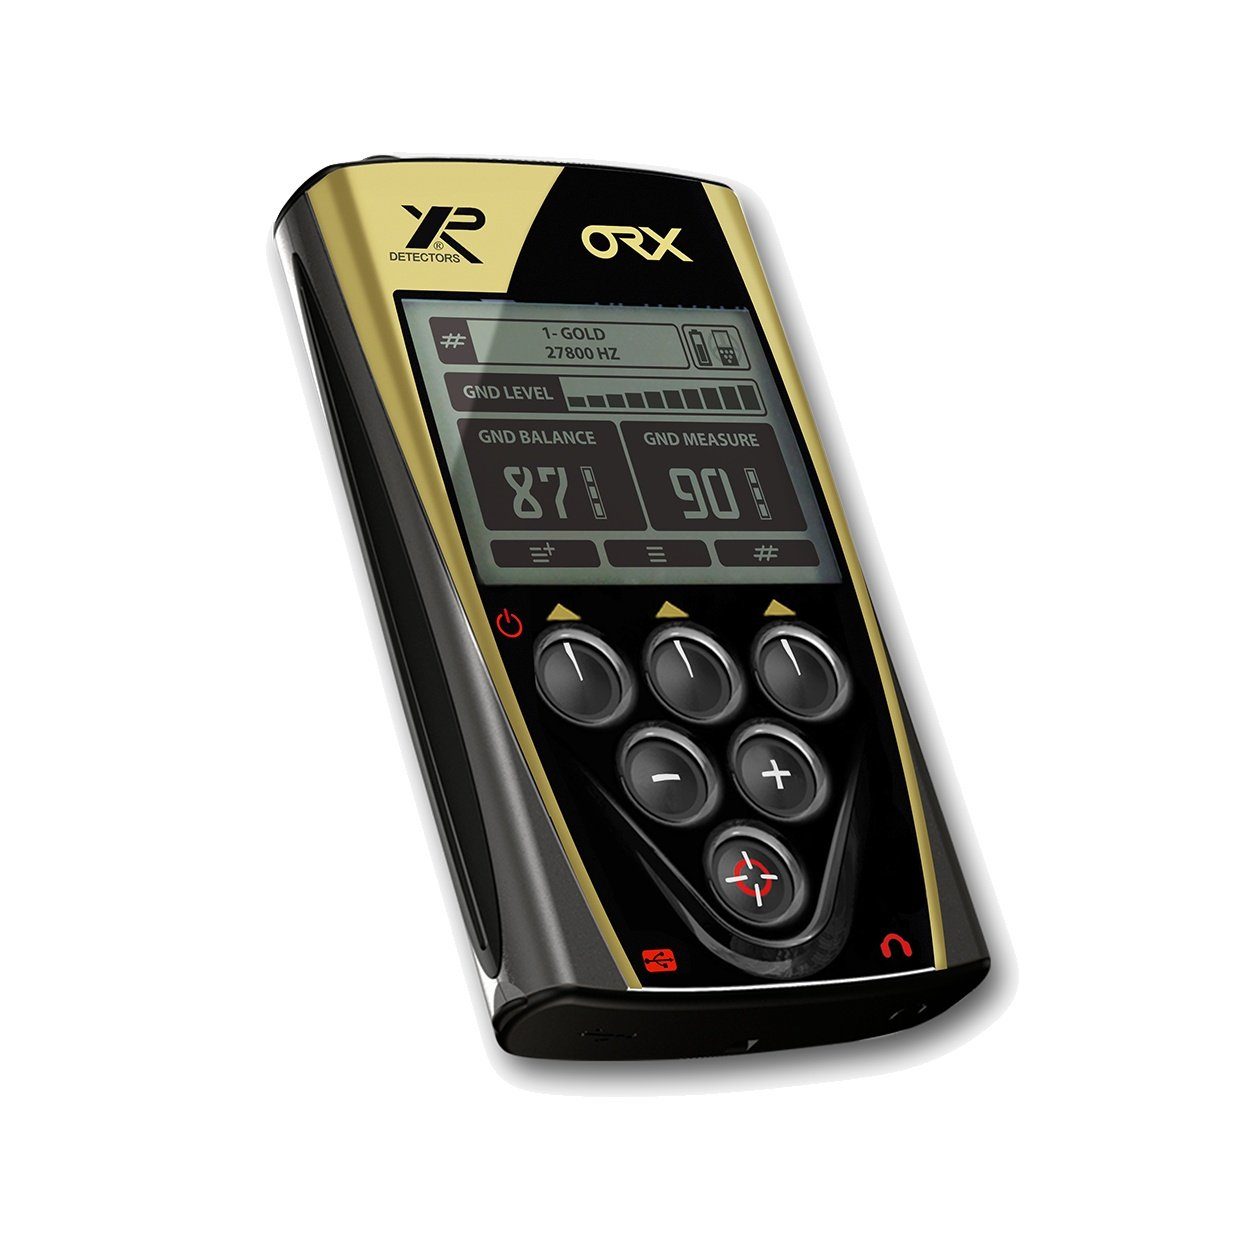 XP X35 Metalldetektor XP RC Metalldetektor ORX WSA 28